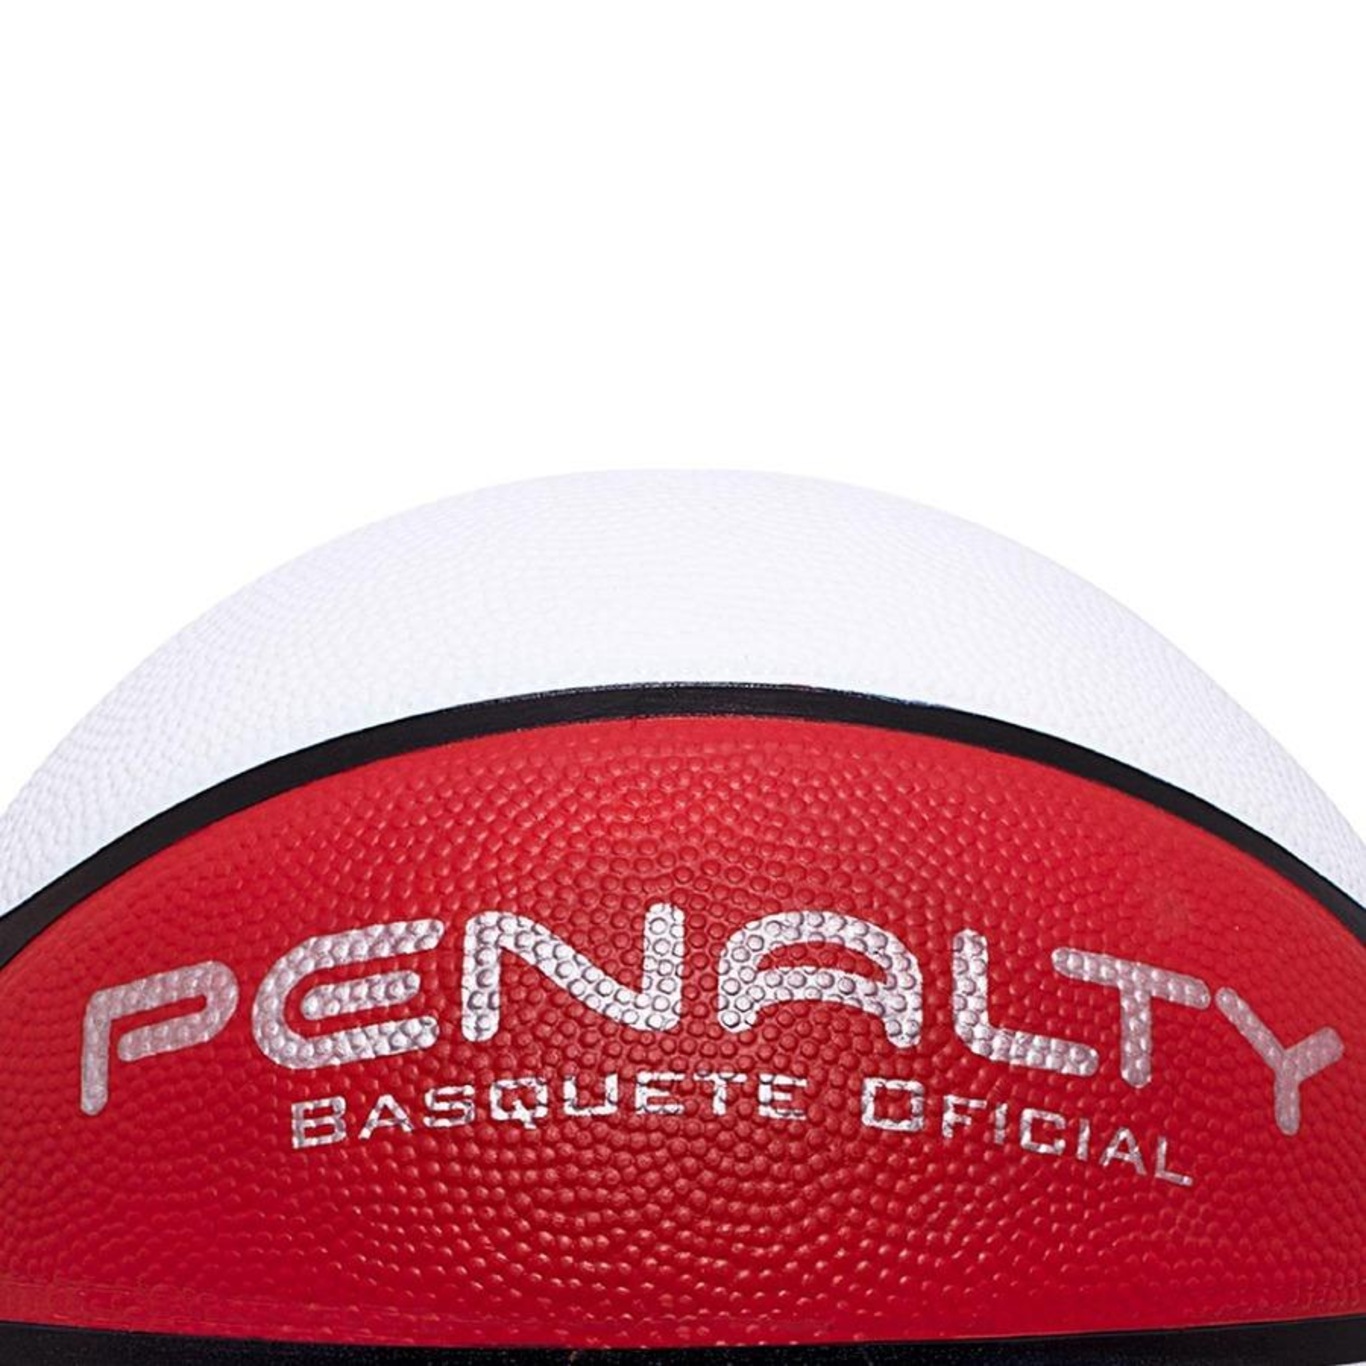 Bola De Basquete - Shoot Penalty